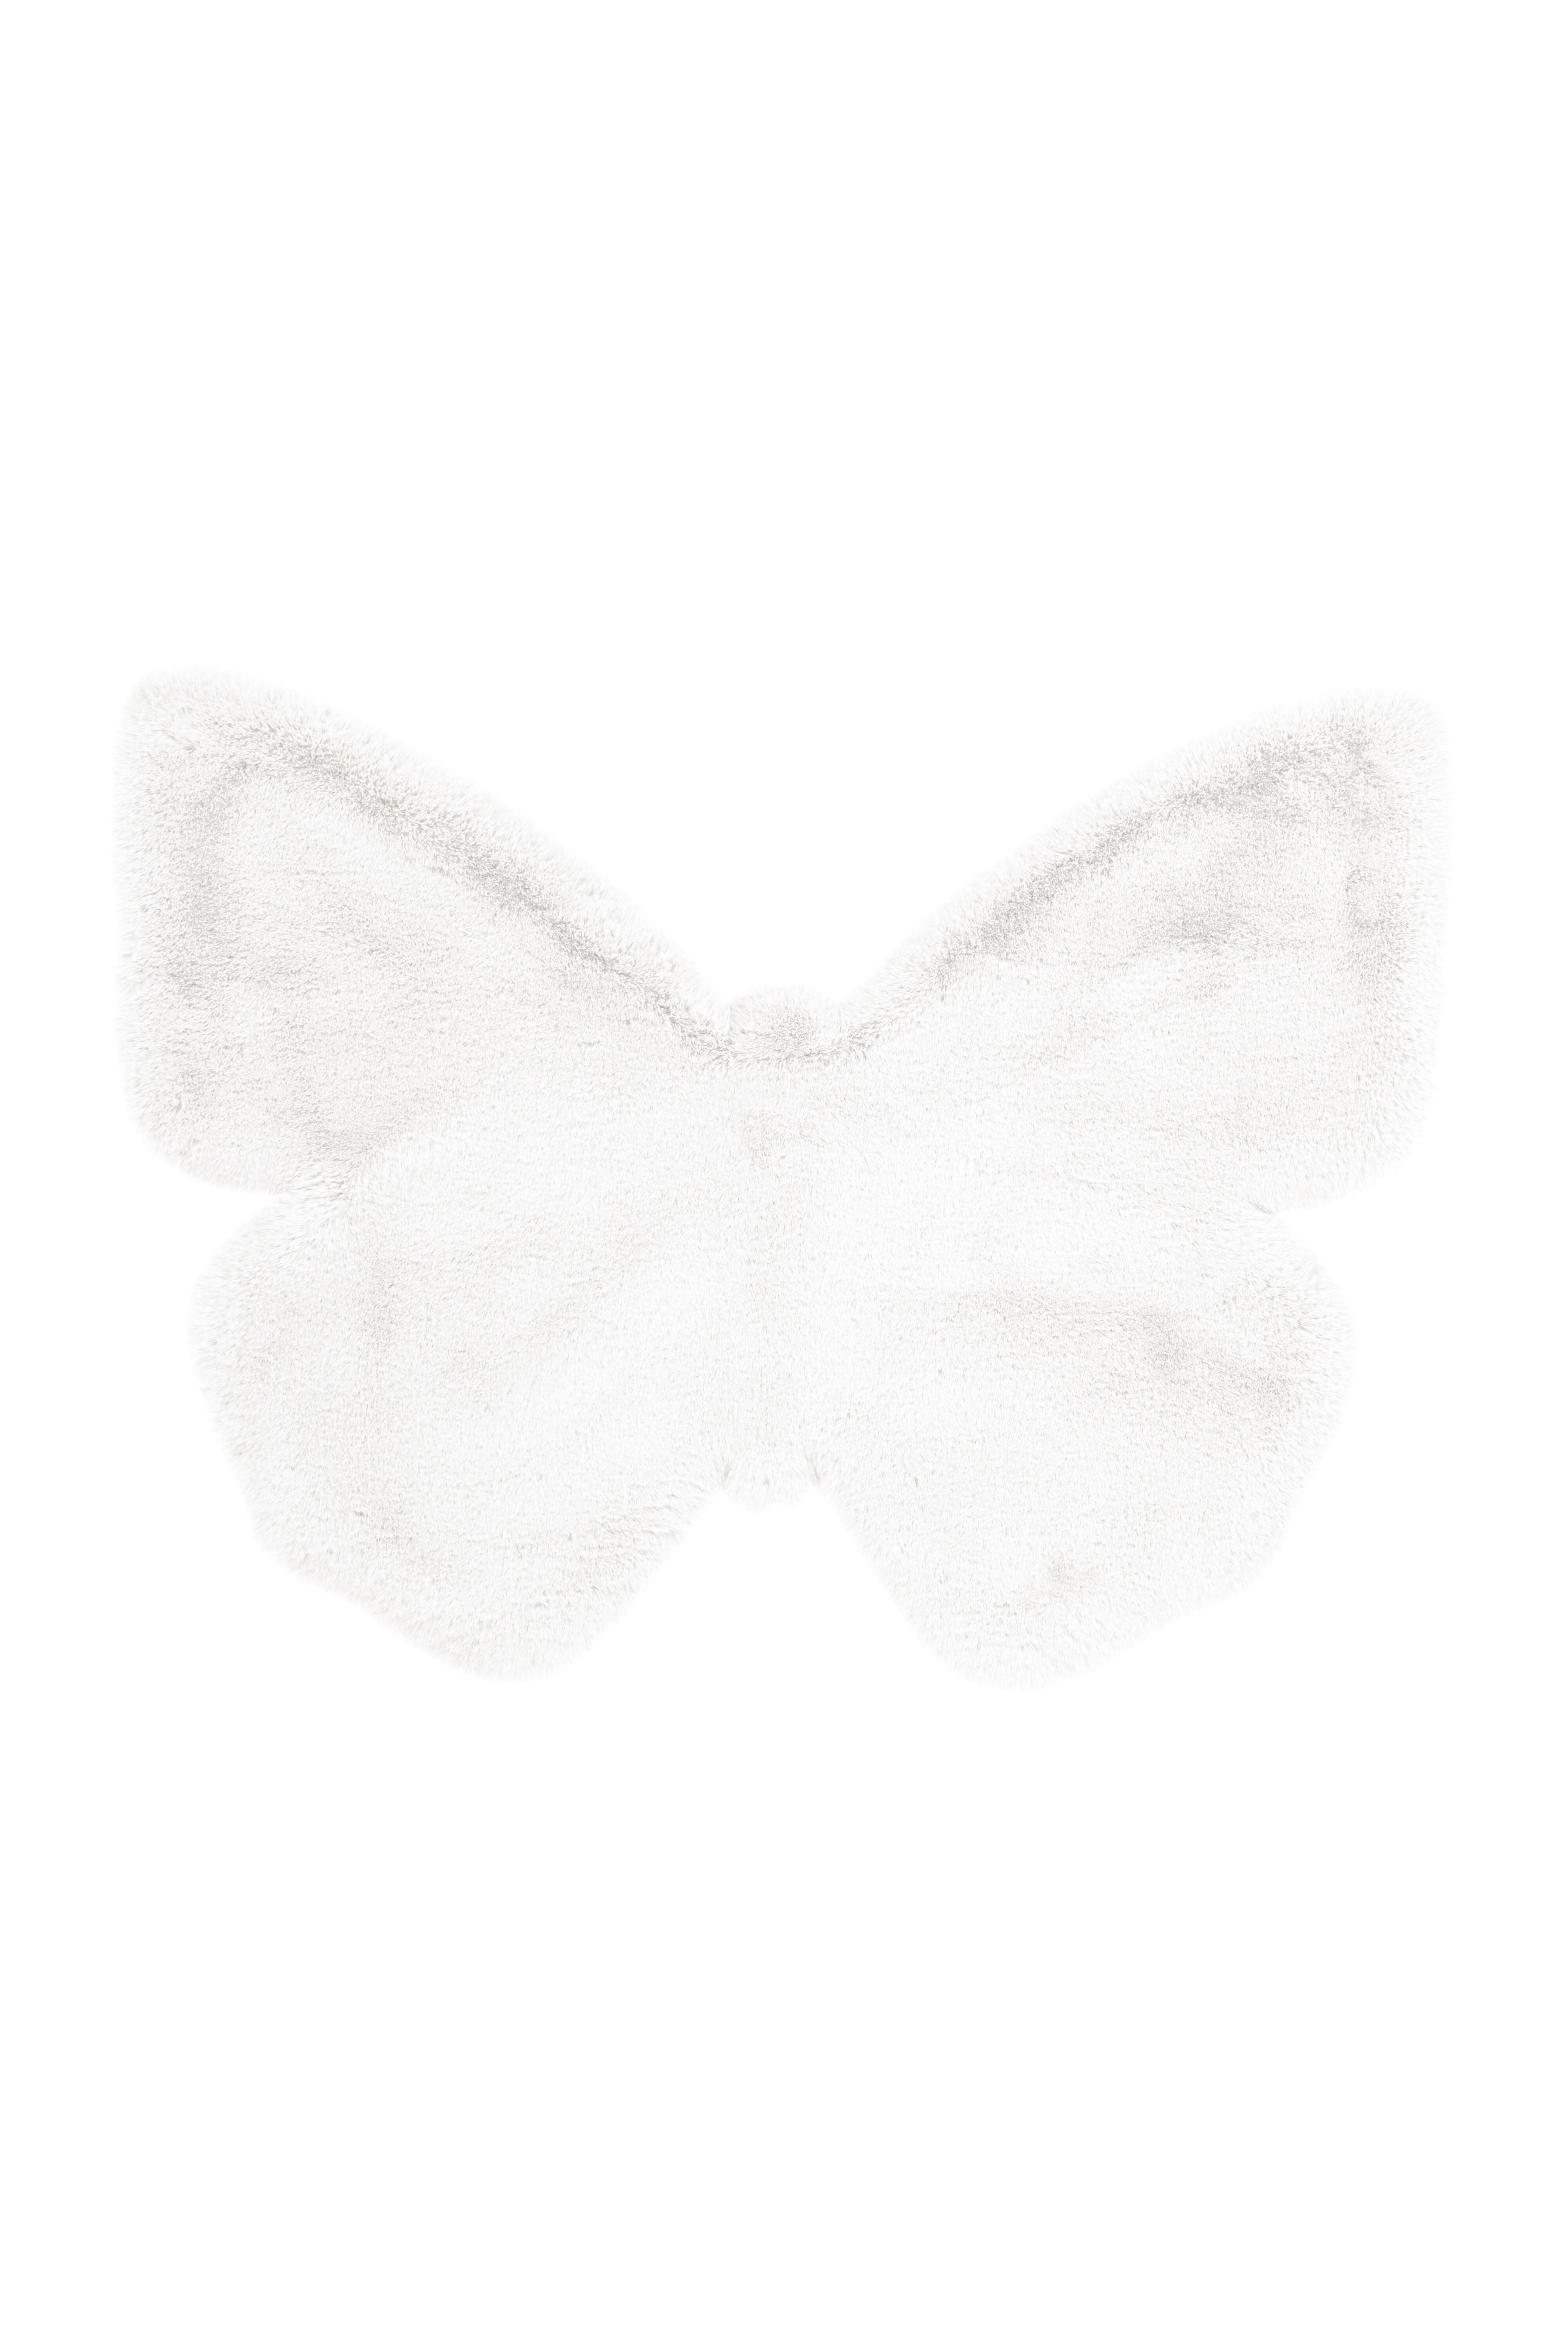 Kayoom Vloerkleed 'Vlinder' kleur Wit, 70 x 90cm